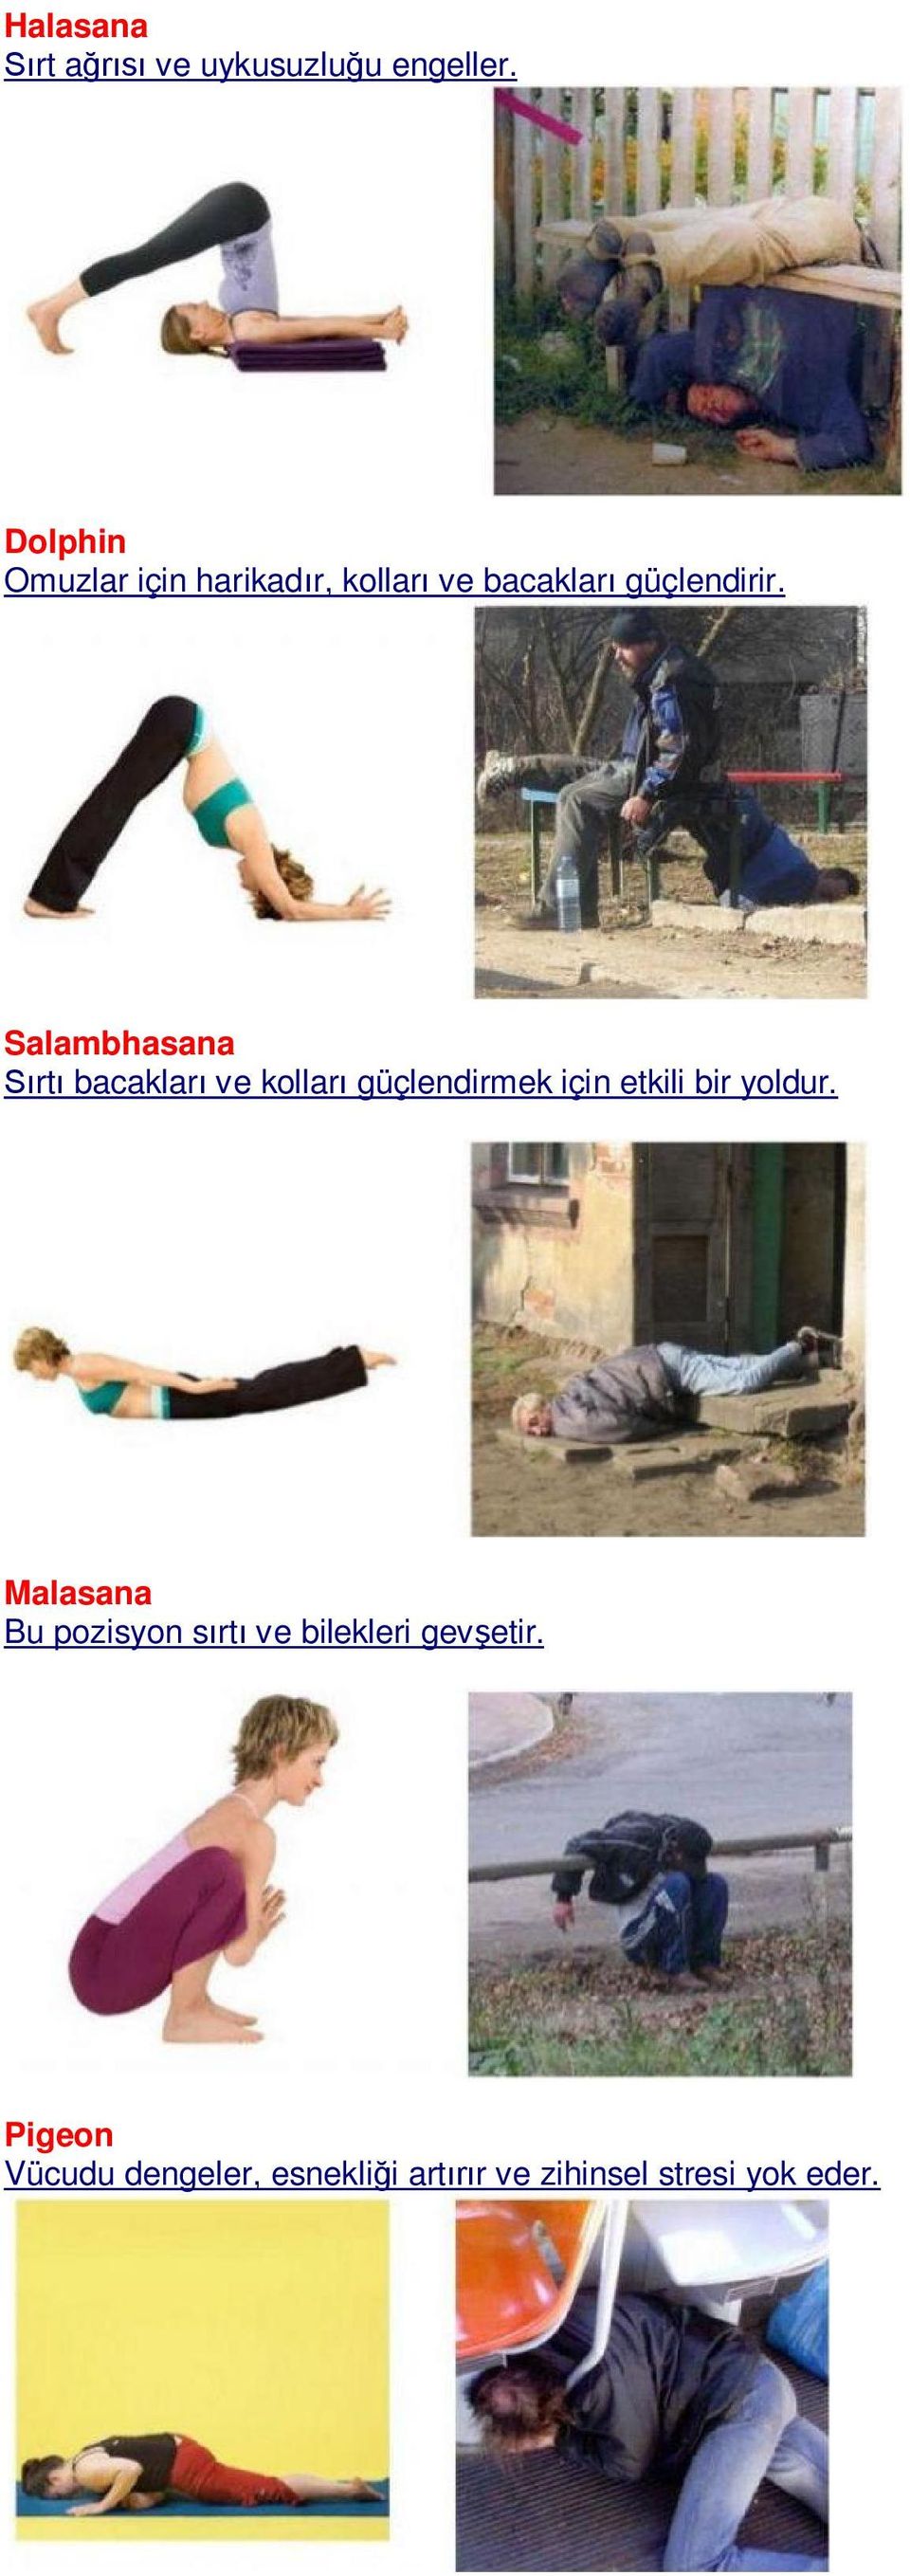 Salambhasana rt bacaklar ve kollar güçlendirmek için etkili bir yoldur.